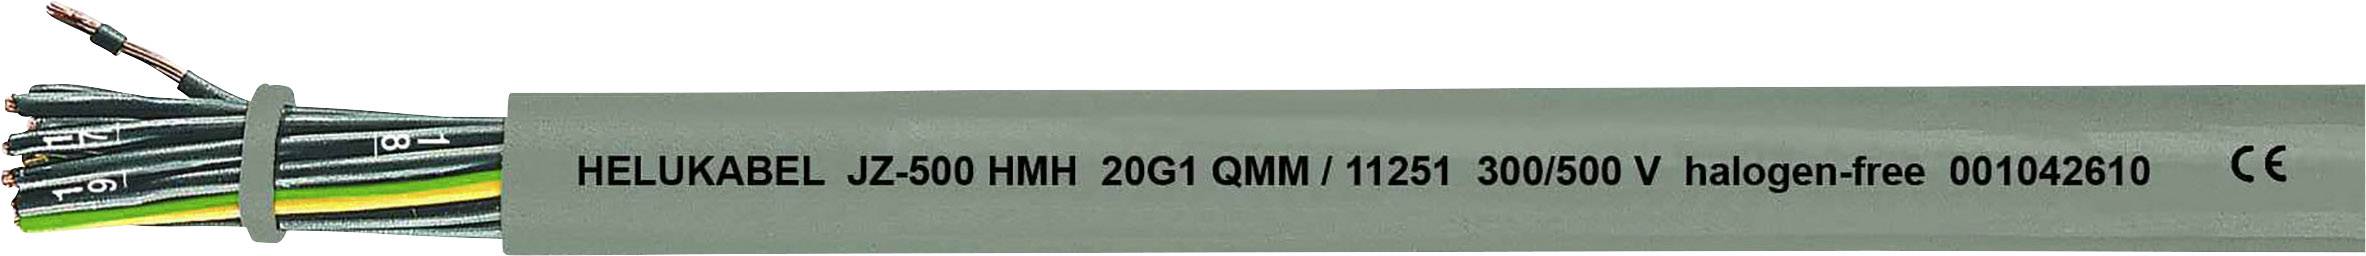 HELUKABEL JZ-500 HMH Steuerleitung 4 G 1.50 mm² Grau 11262-500 500 m